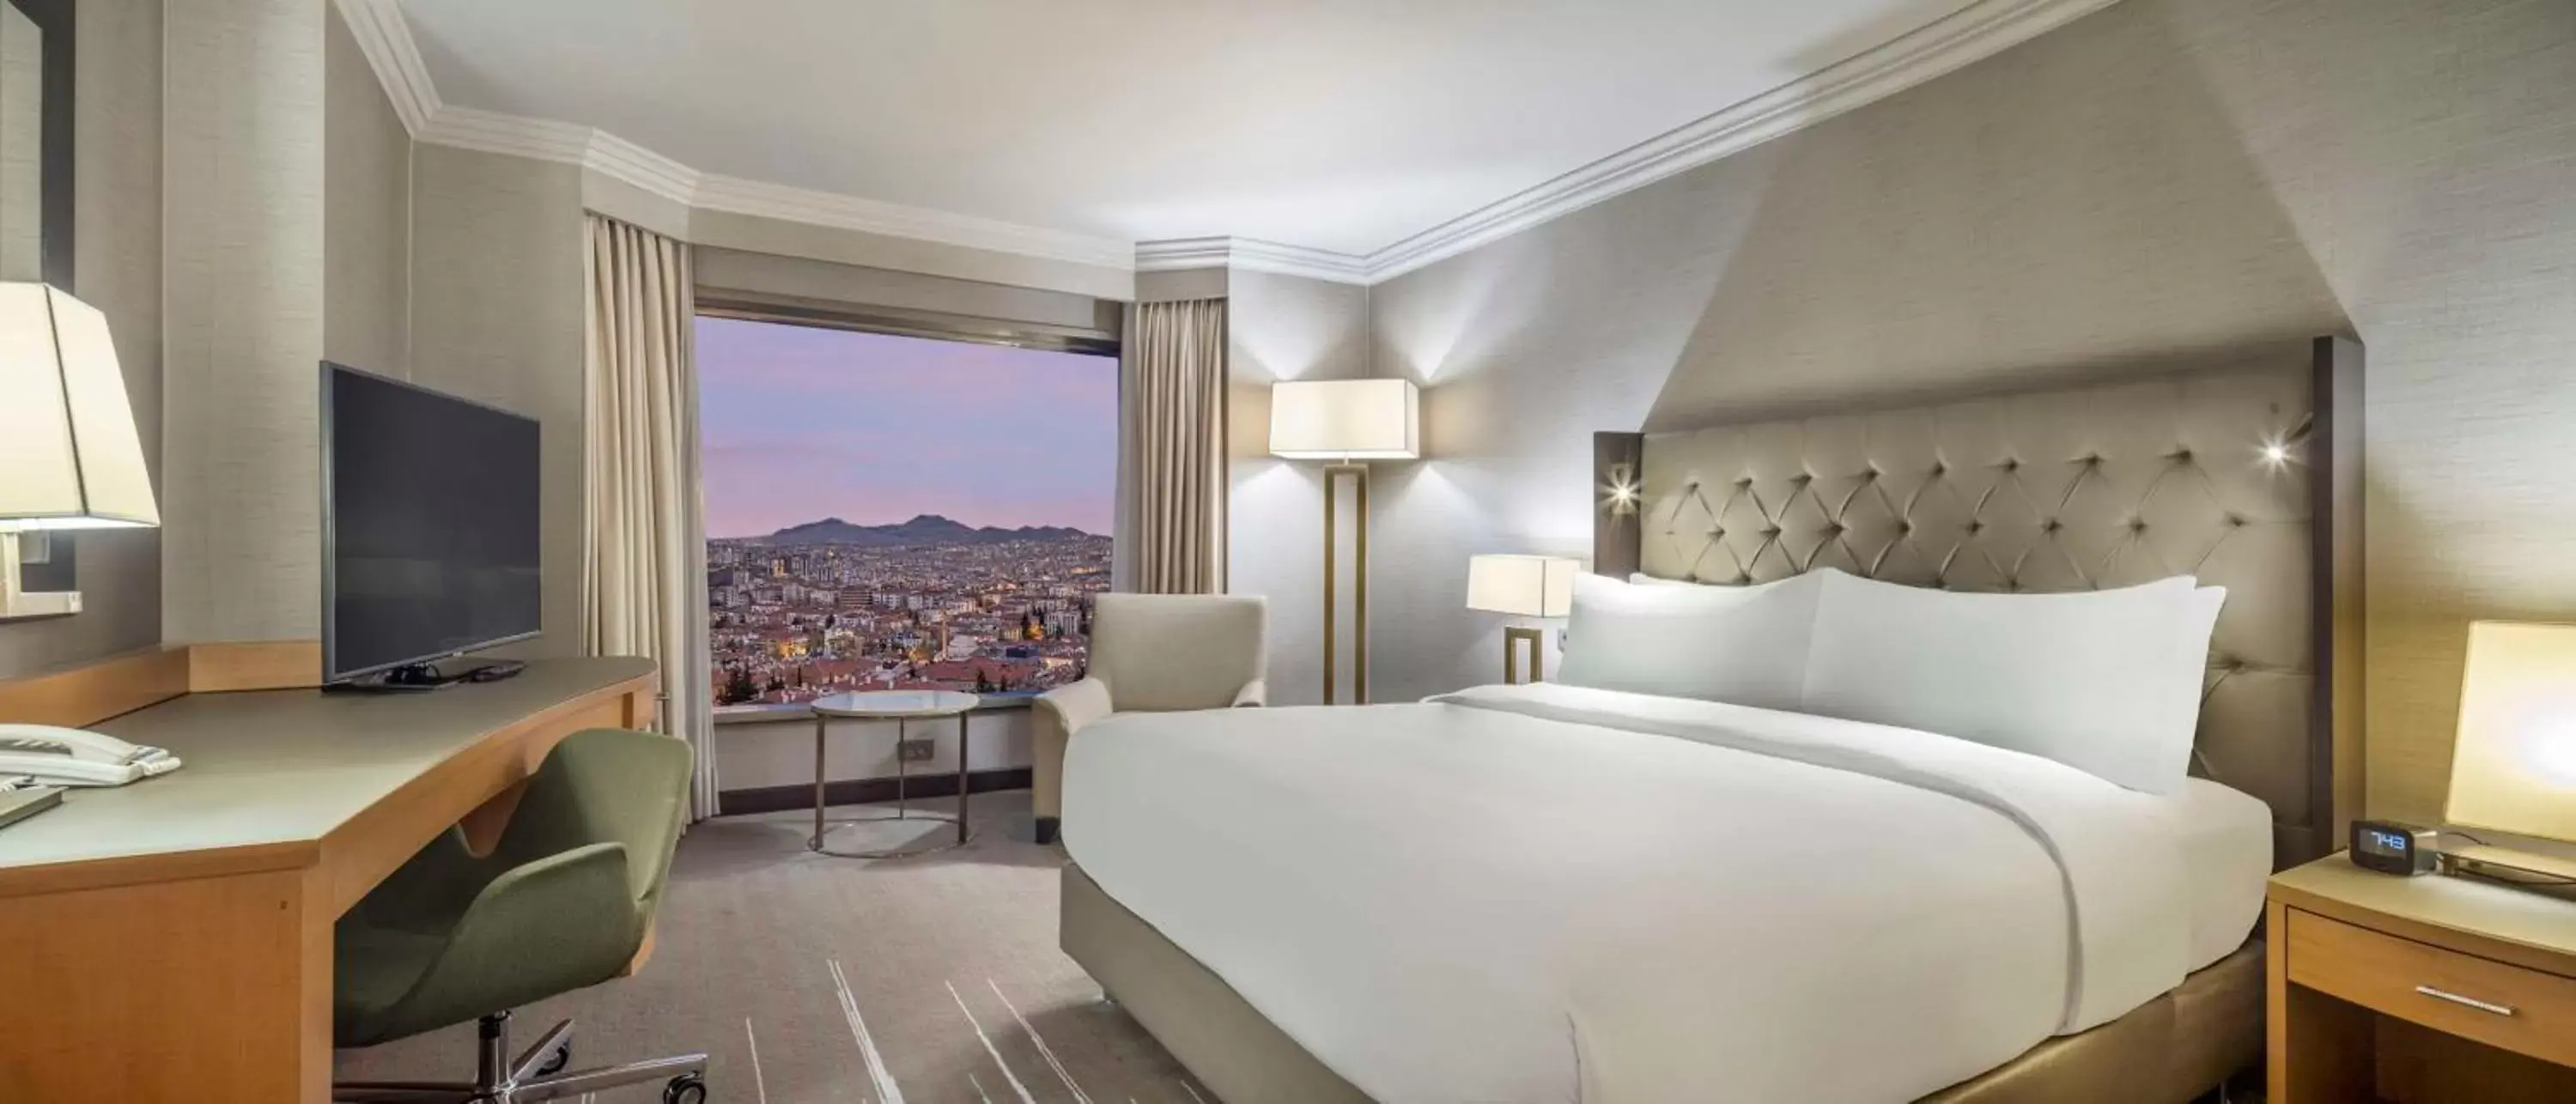 Bedroom in Ankara HiltonSA